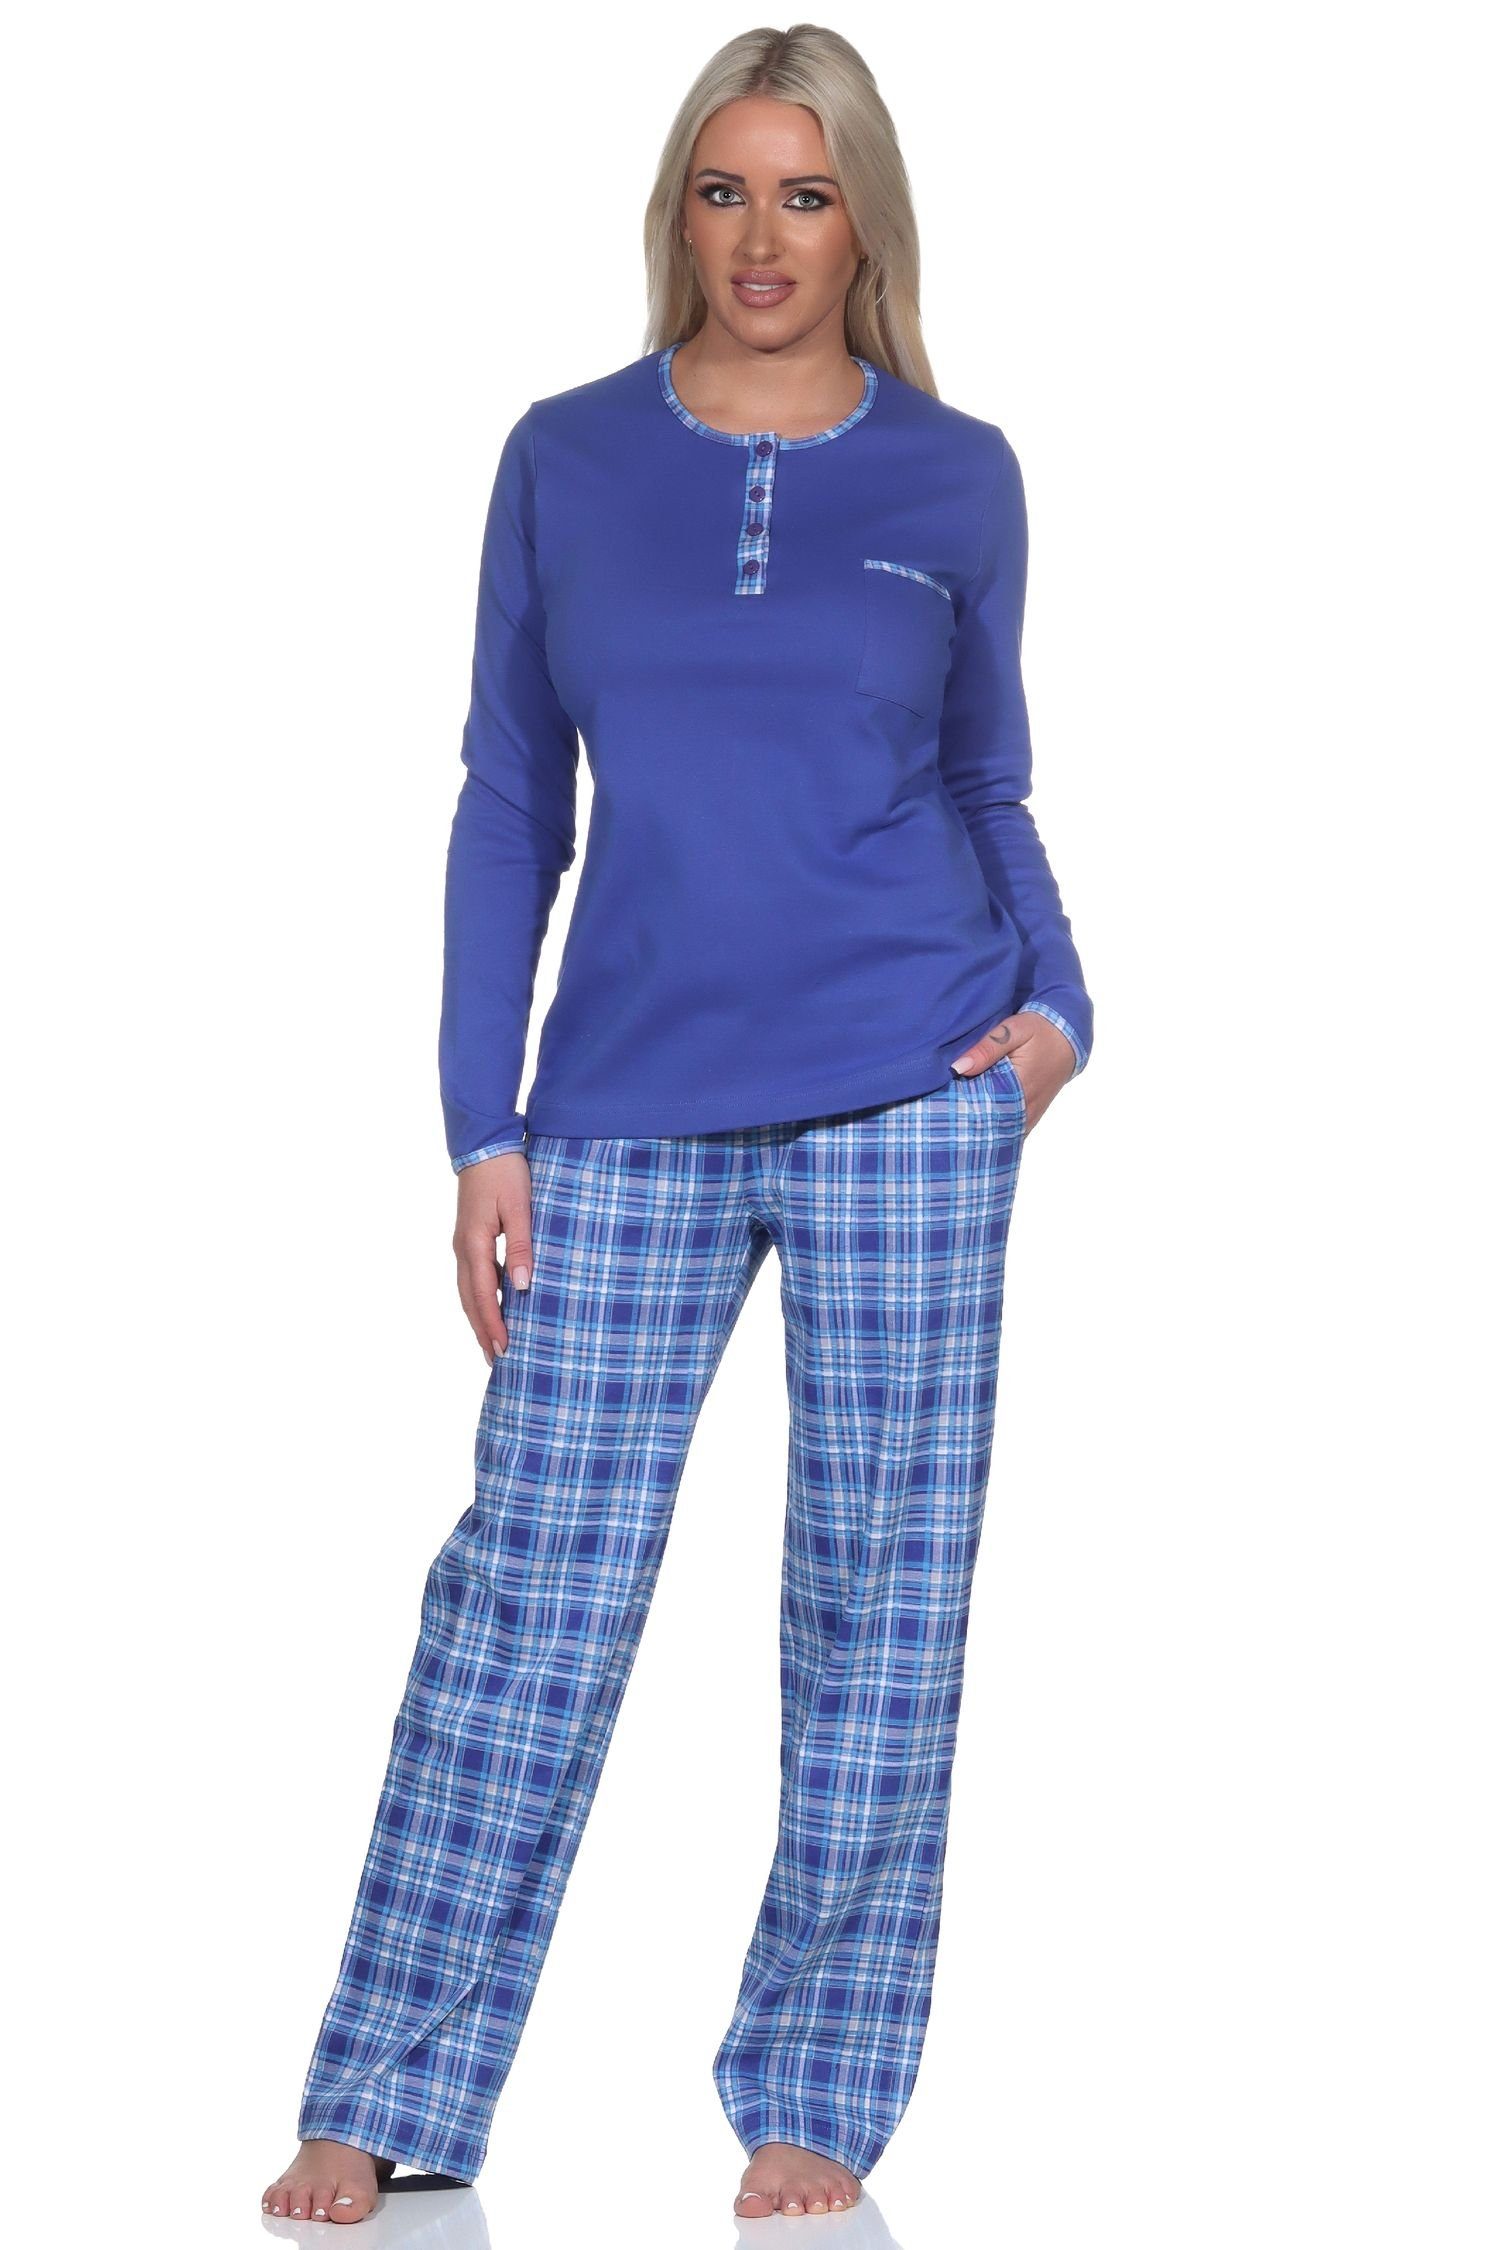 Normann blau karierter Pyjama Hose Schlafanzug Damen mit Interlock in Kuschel Qualität